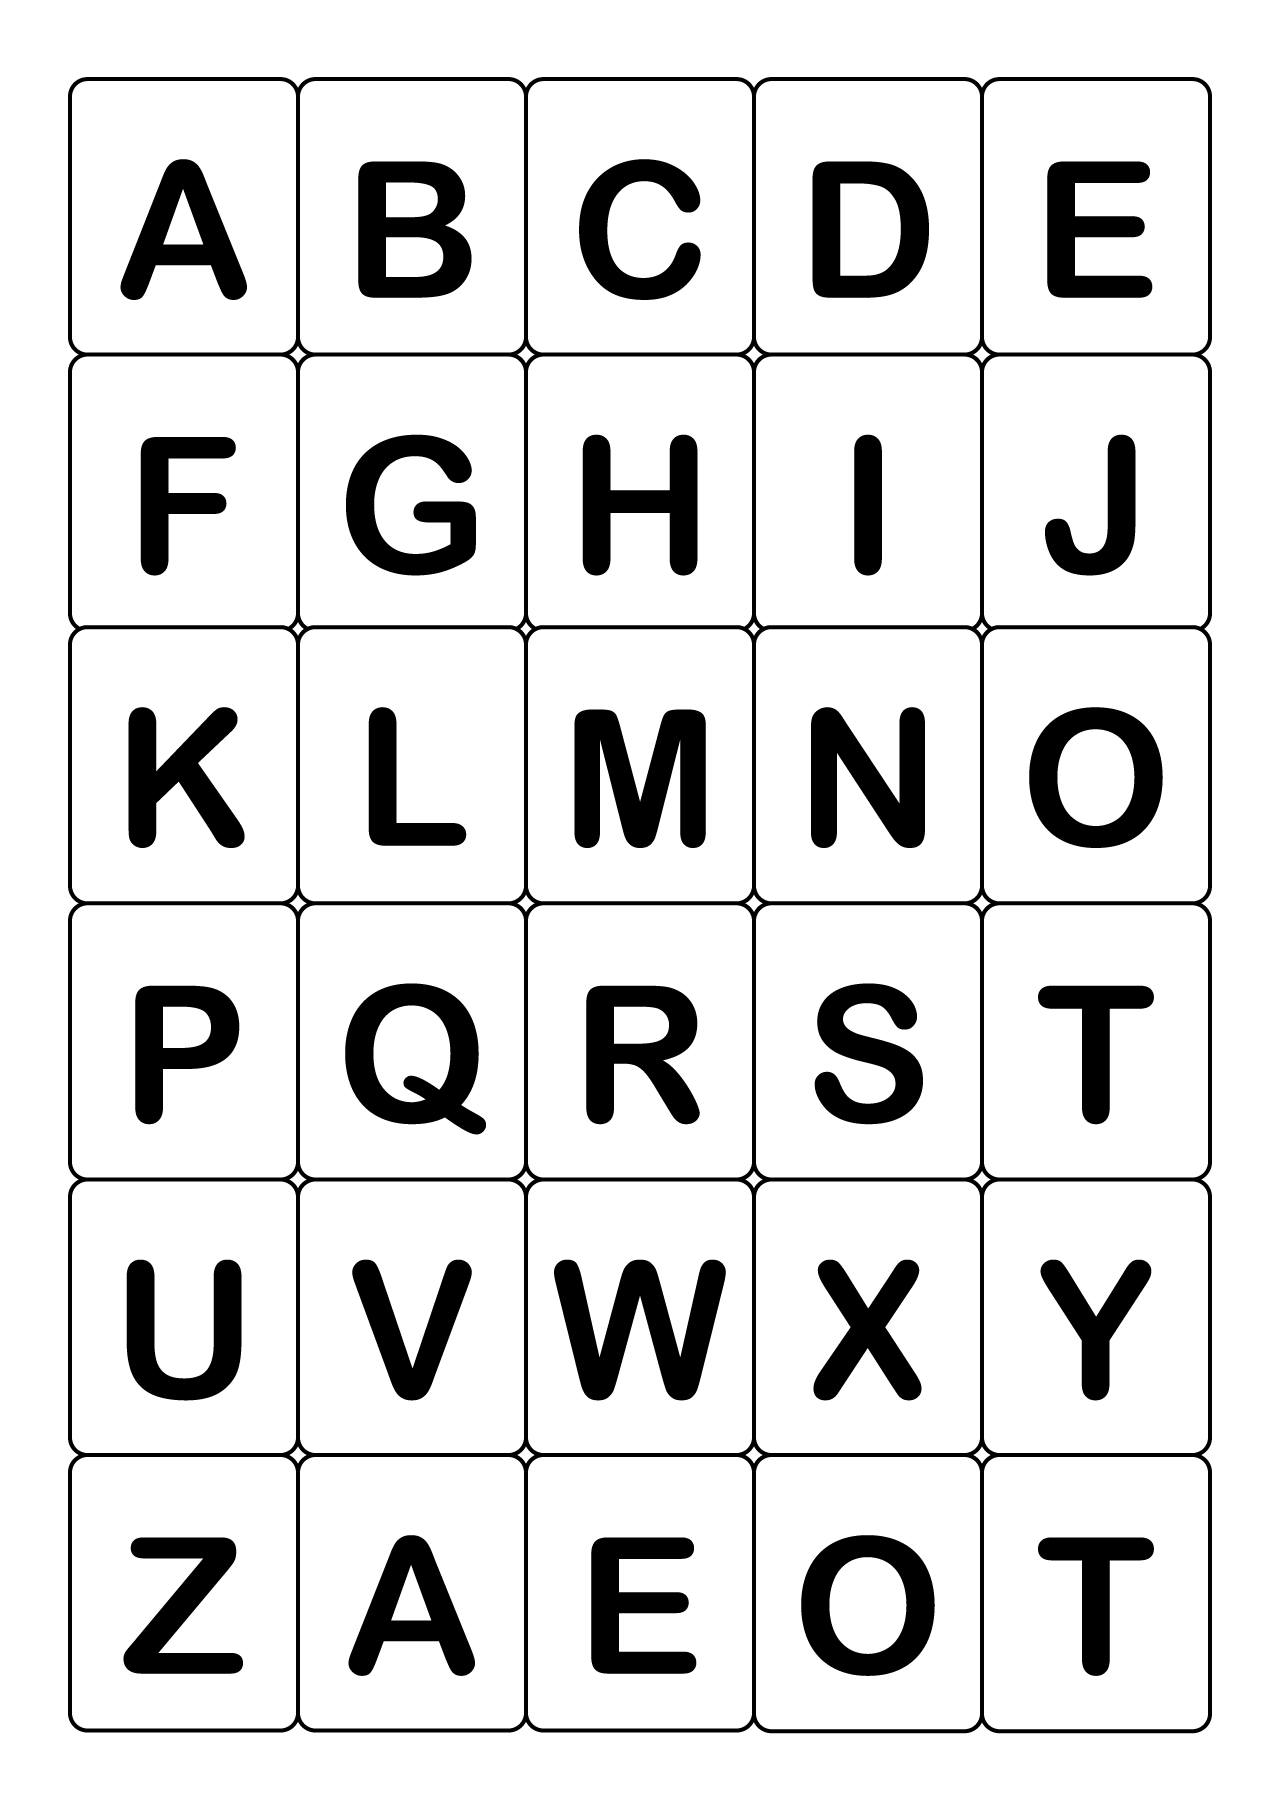 Abc 英語アルファベットカード 大文字 の無料イラスト素材